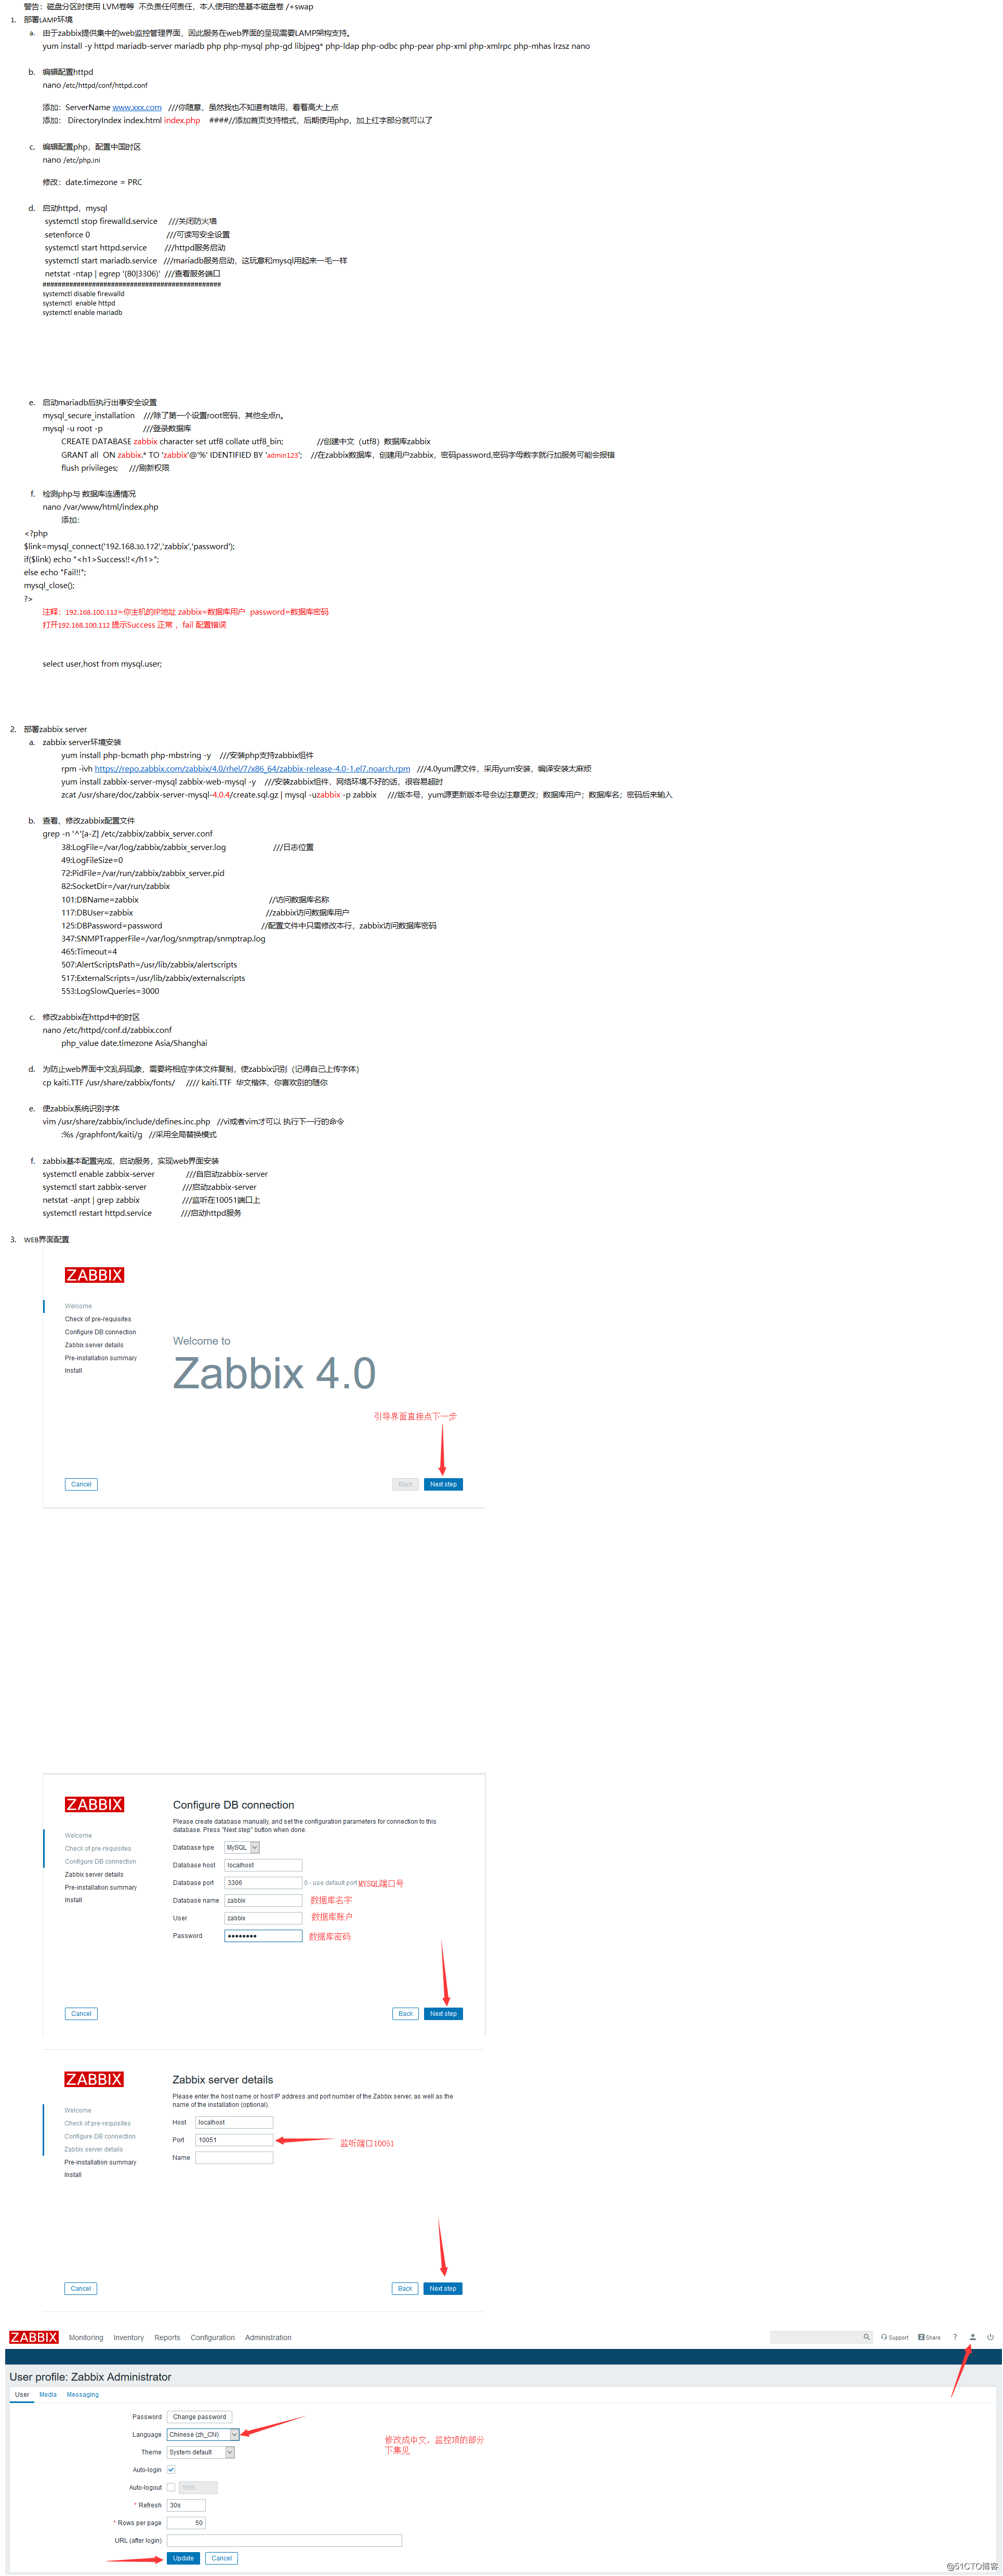 Zabbix 4.0.4 install for Centos 7